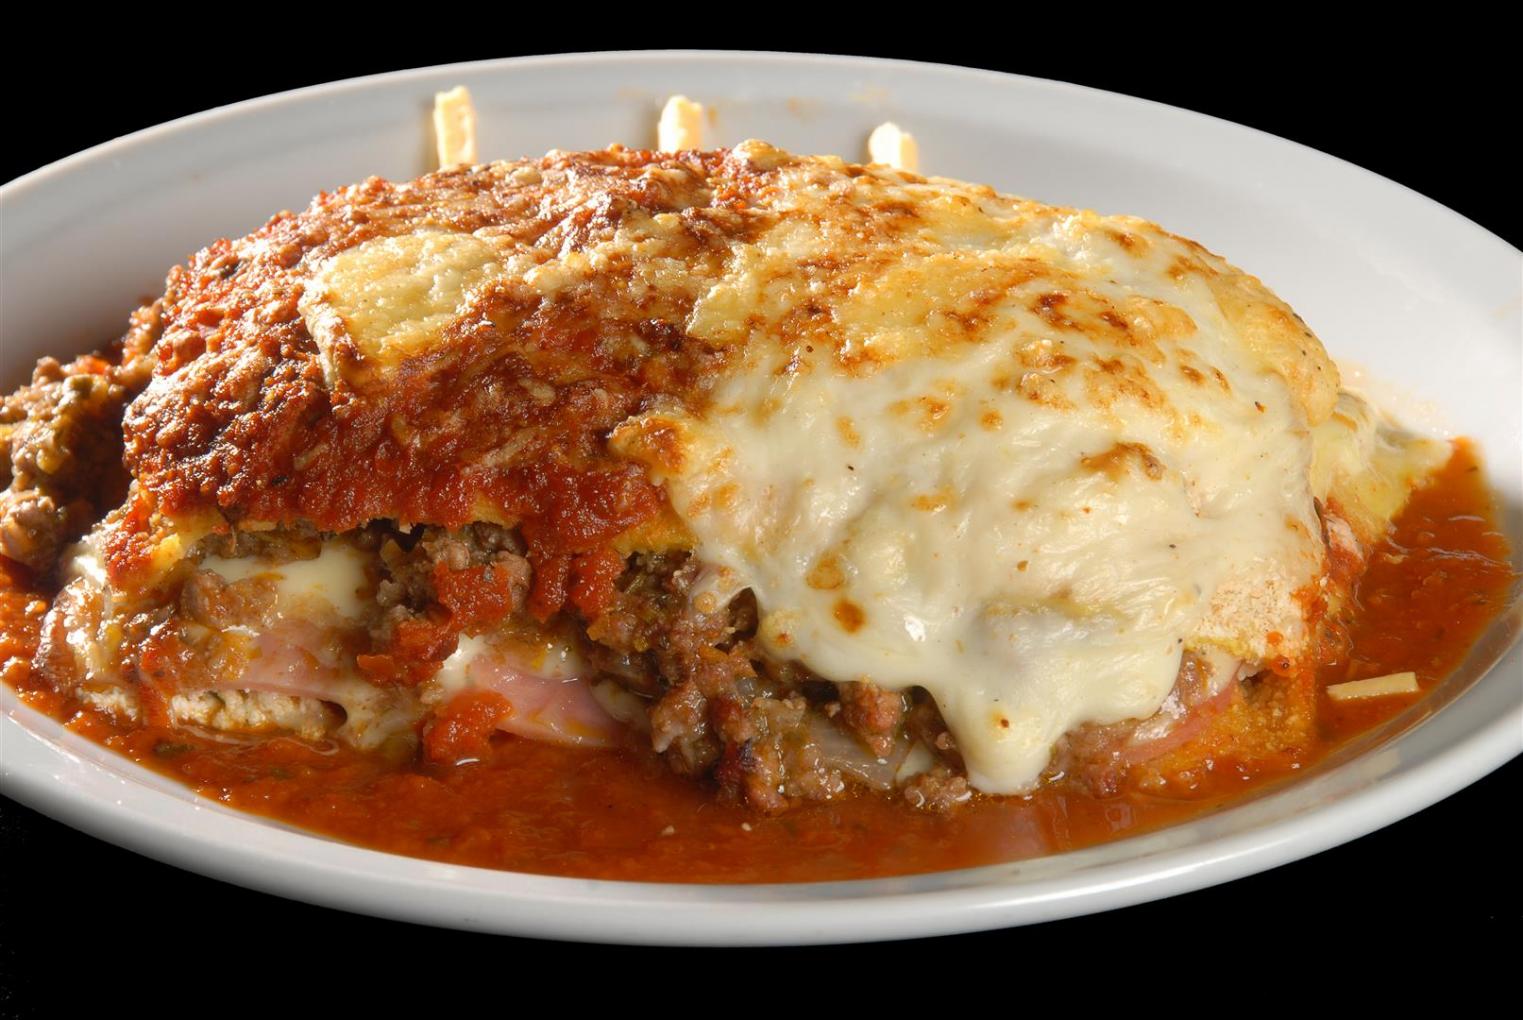 jauja hoy te ofrece lasagna de carne!